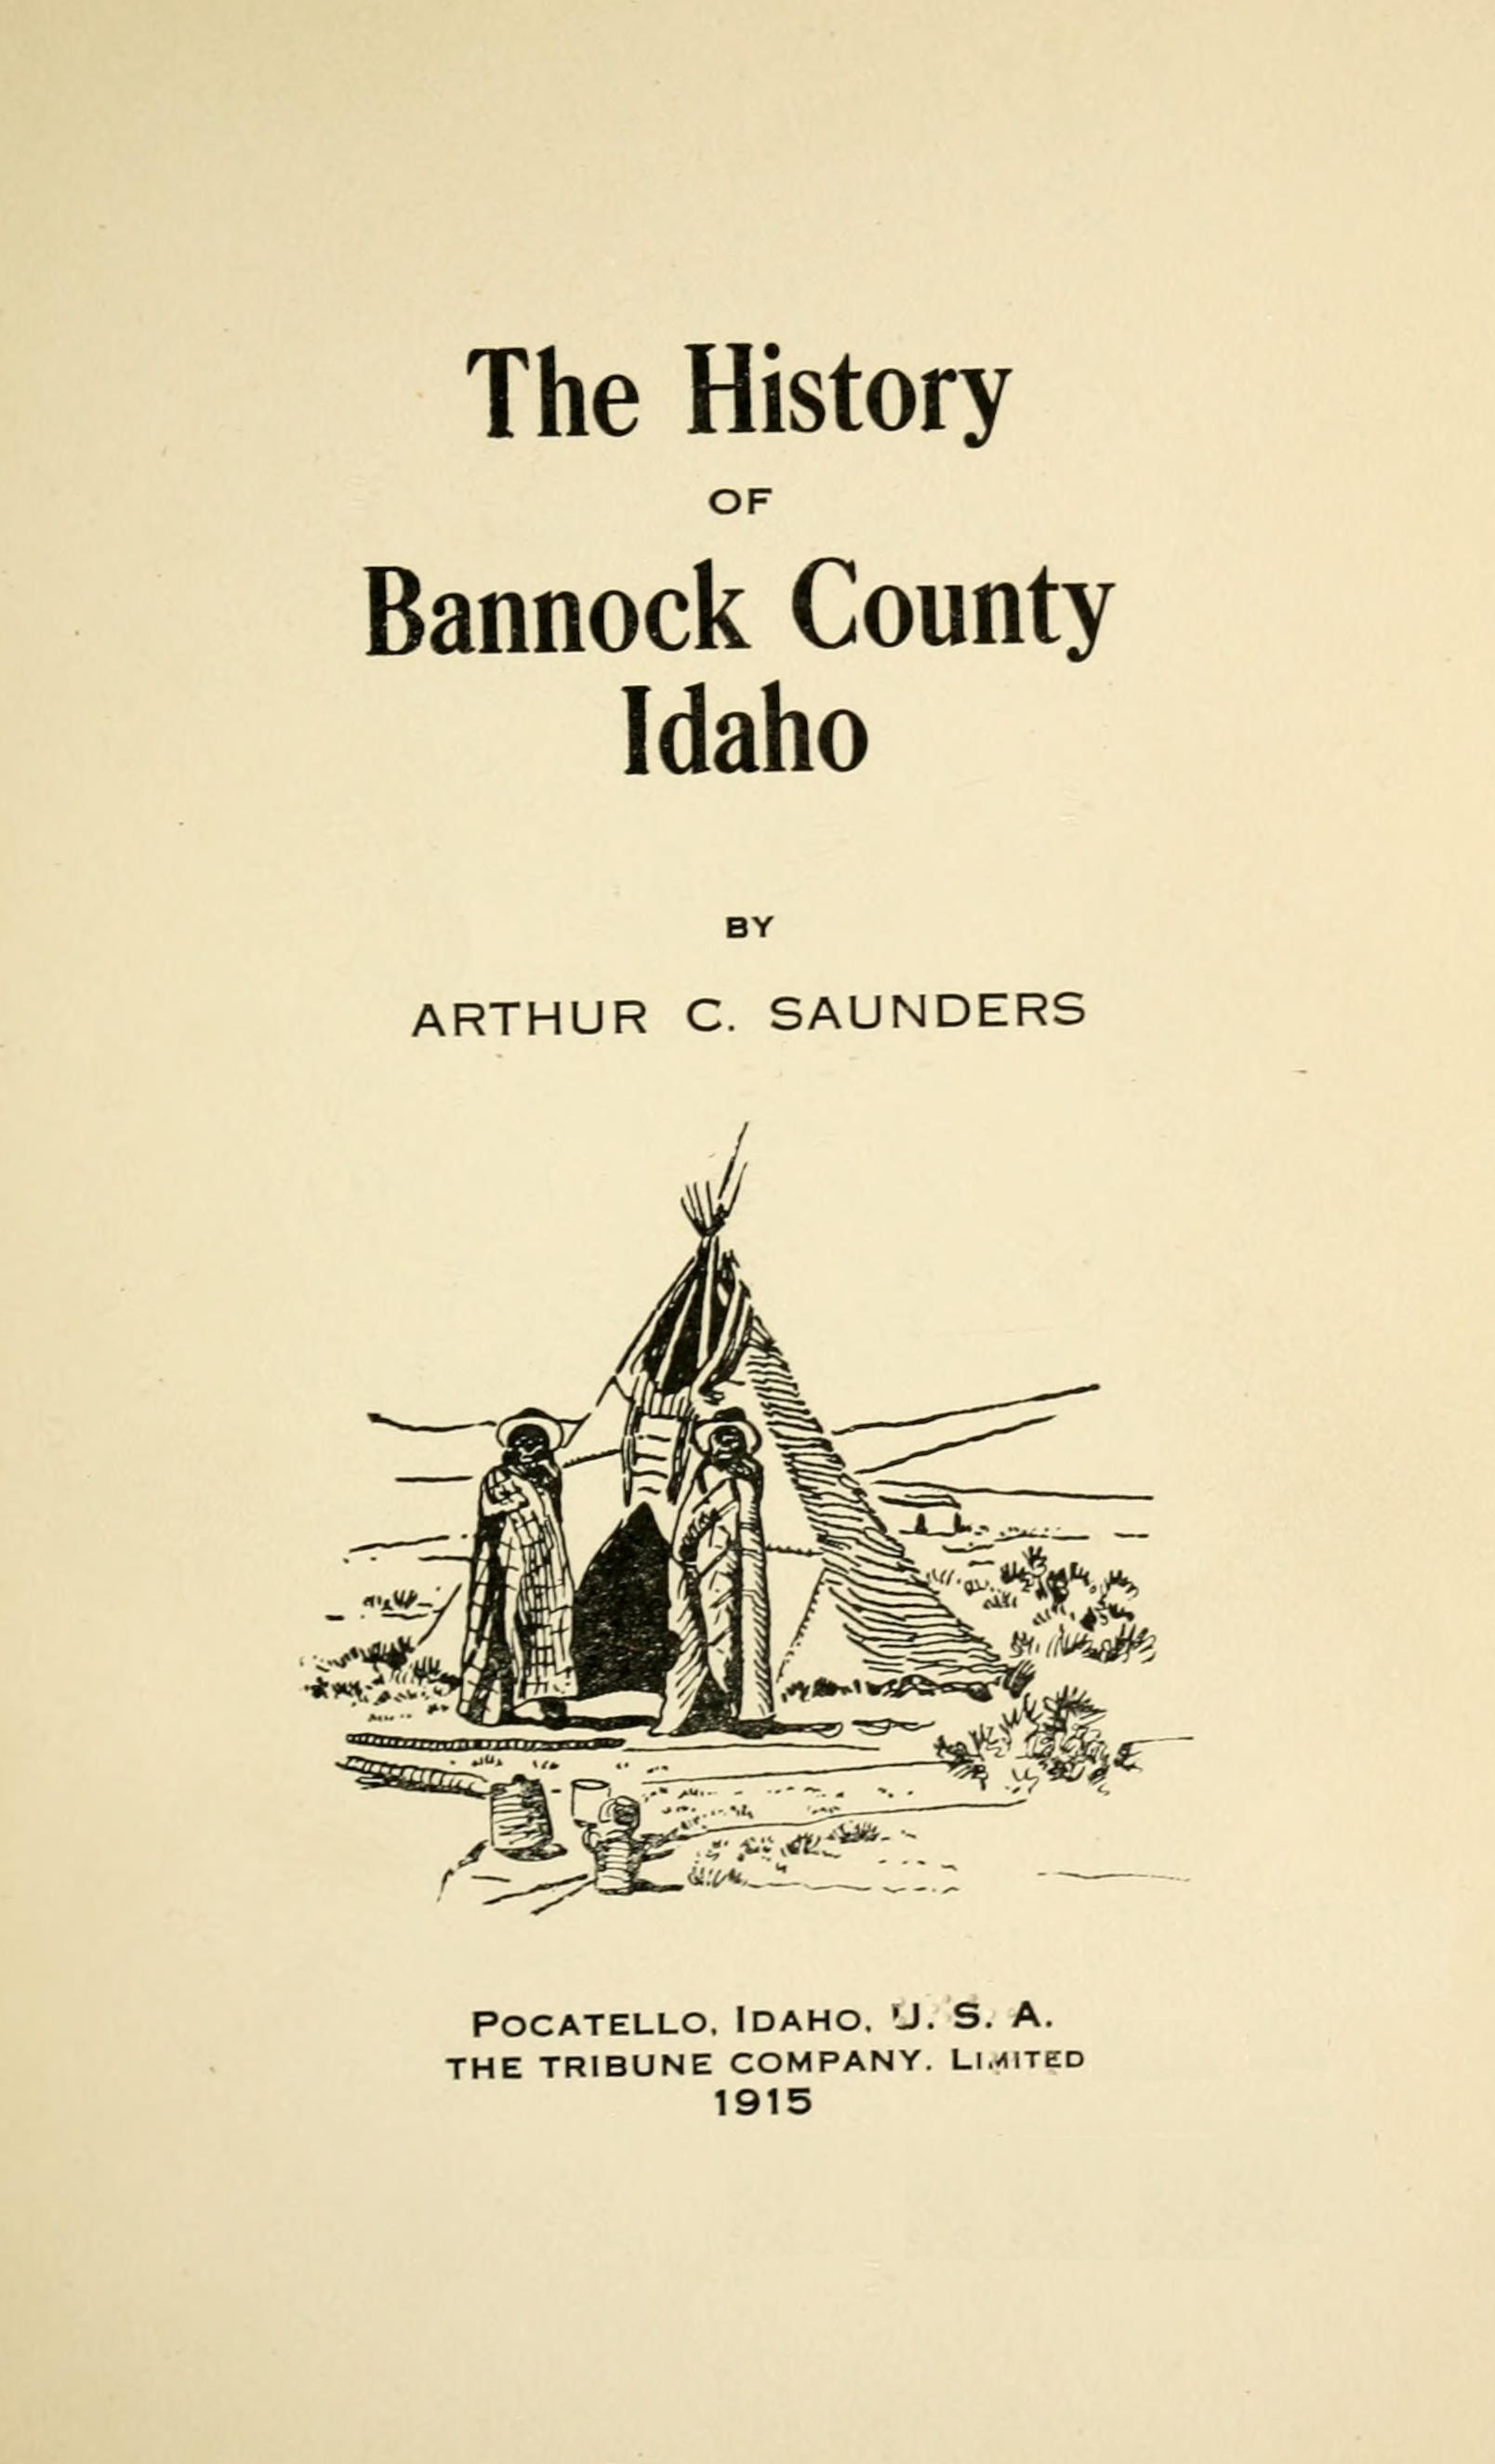 The history of Bannock County, Idaho